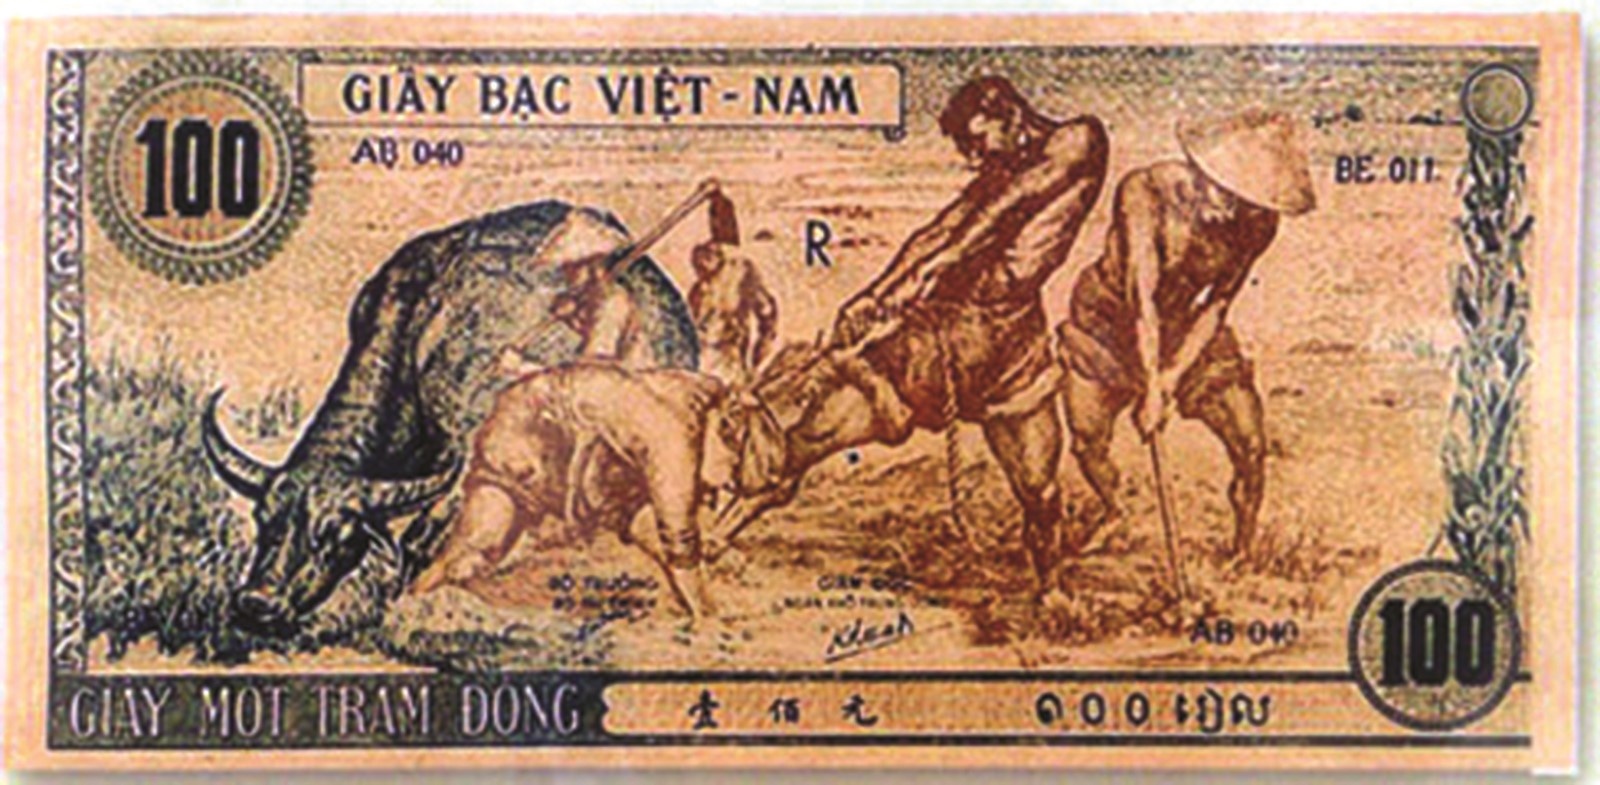 Đi tìm tác giả vẽ “con trâu xanh” trên tiền Việt Nam Dân chủ cộng hòa